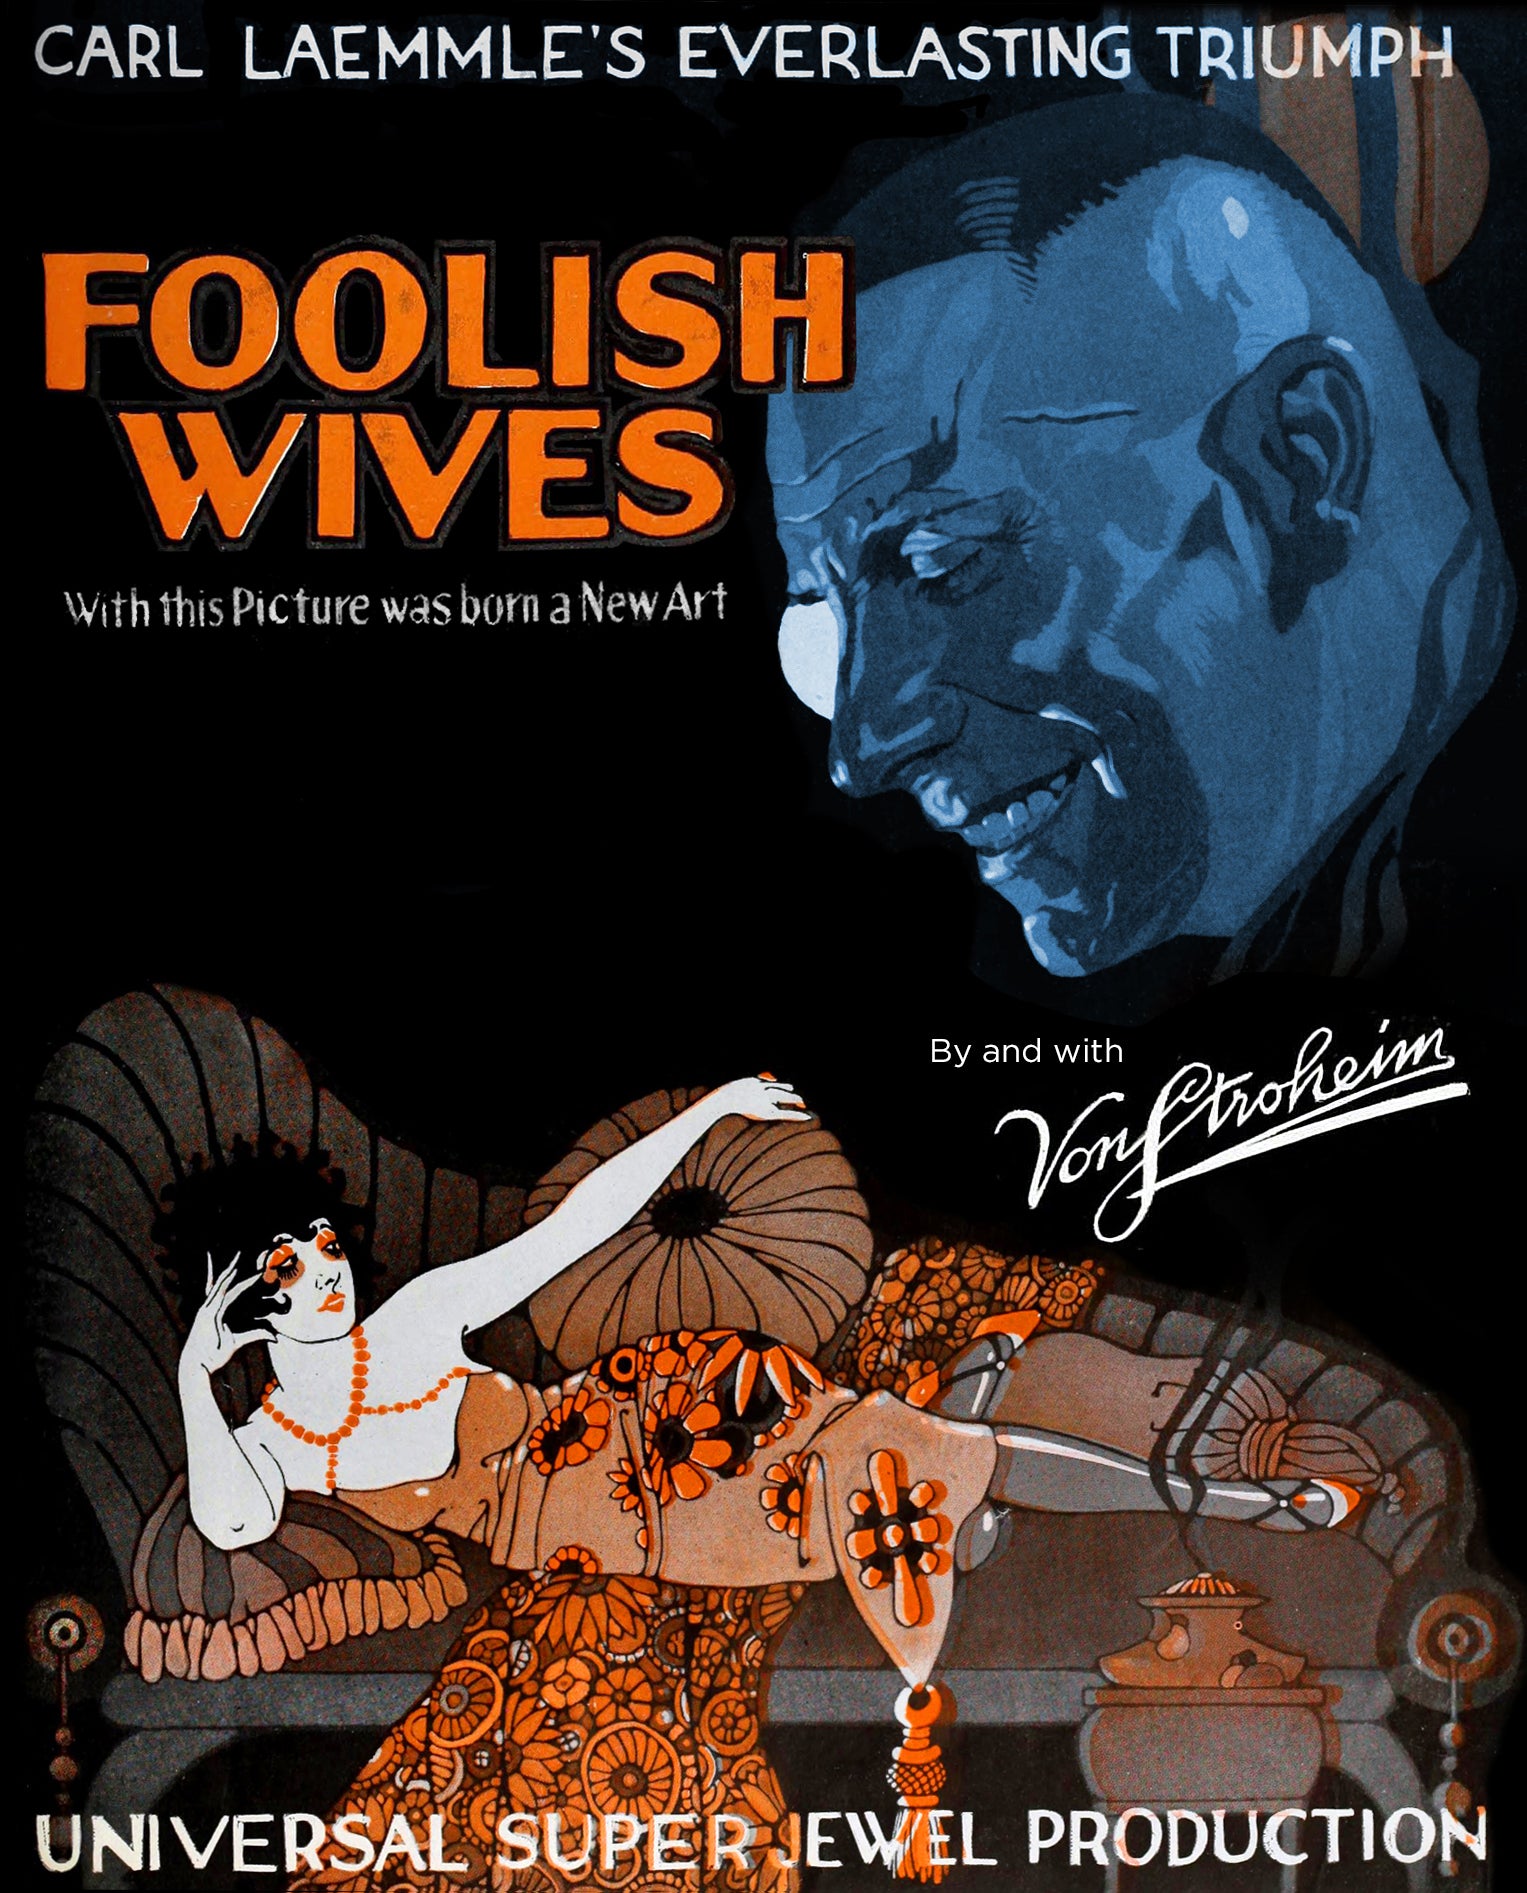 Foolish Wives – Flicker Alley